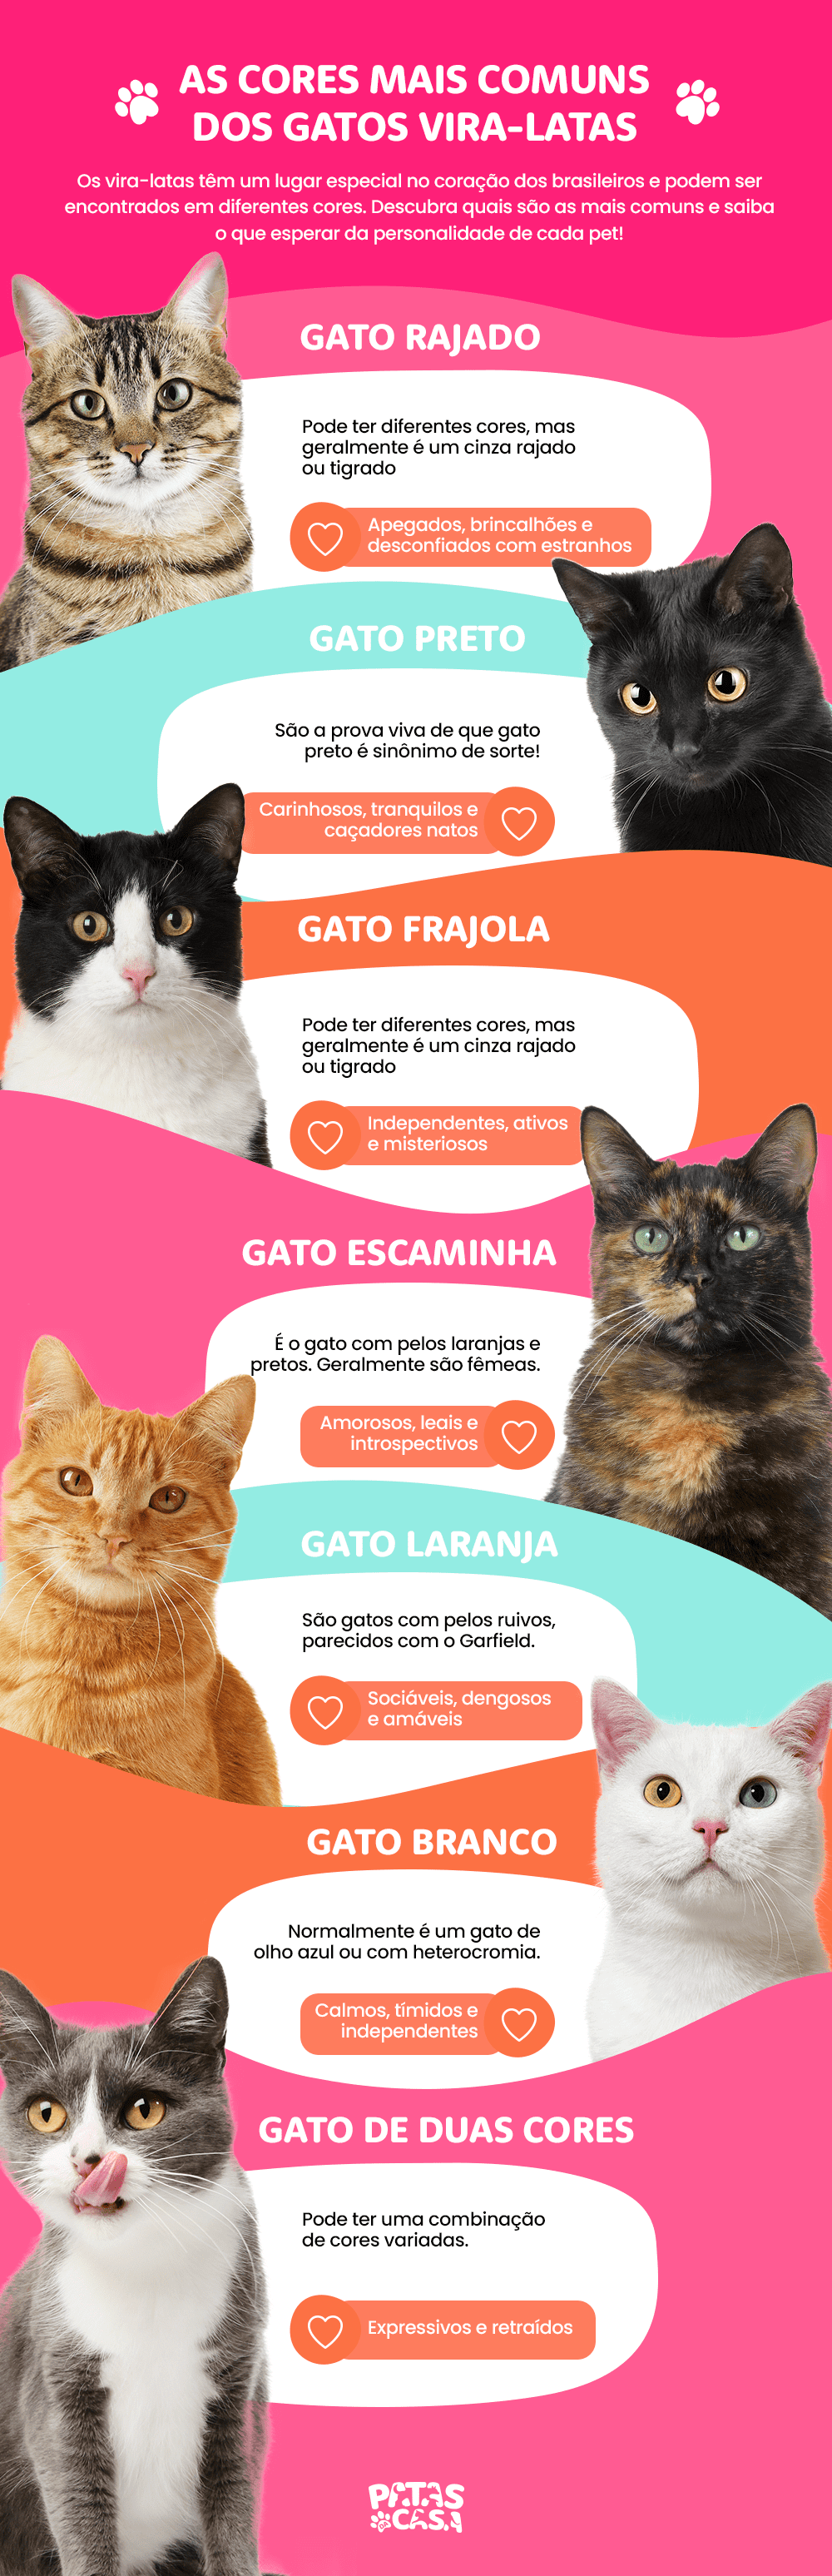 Infográfico mostrando todas as cores de gatos vira-latas possíveis, com fotos de gato rajado, preto, branco, laranja, frajola e uma pequena descrição ao lado